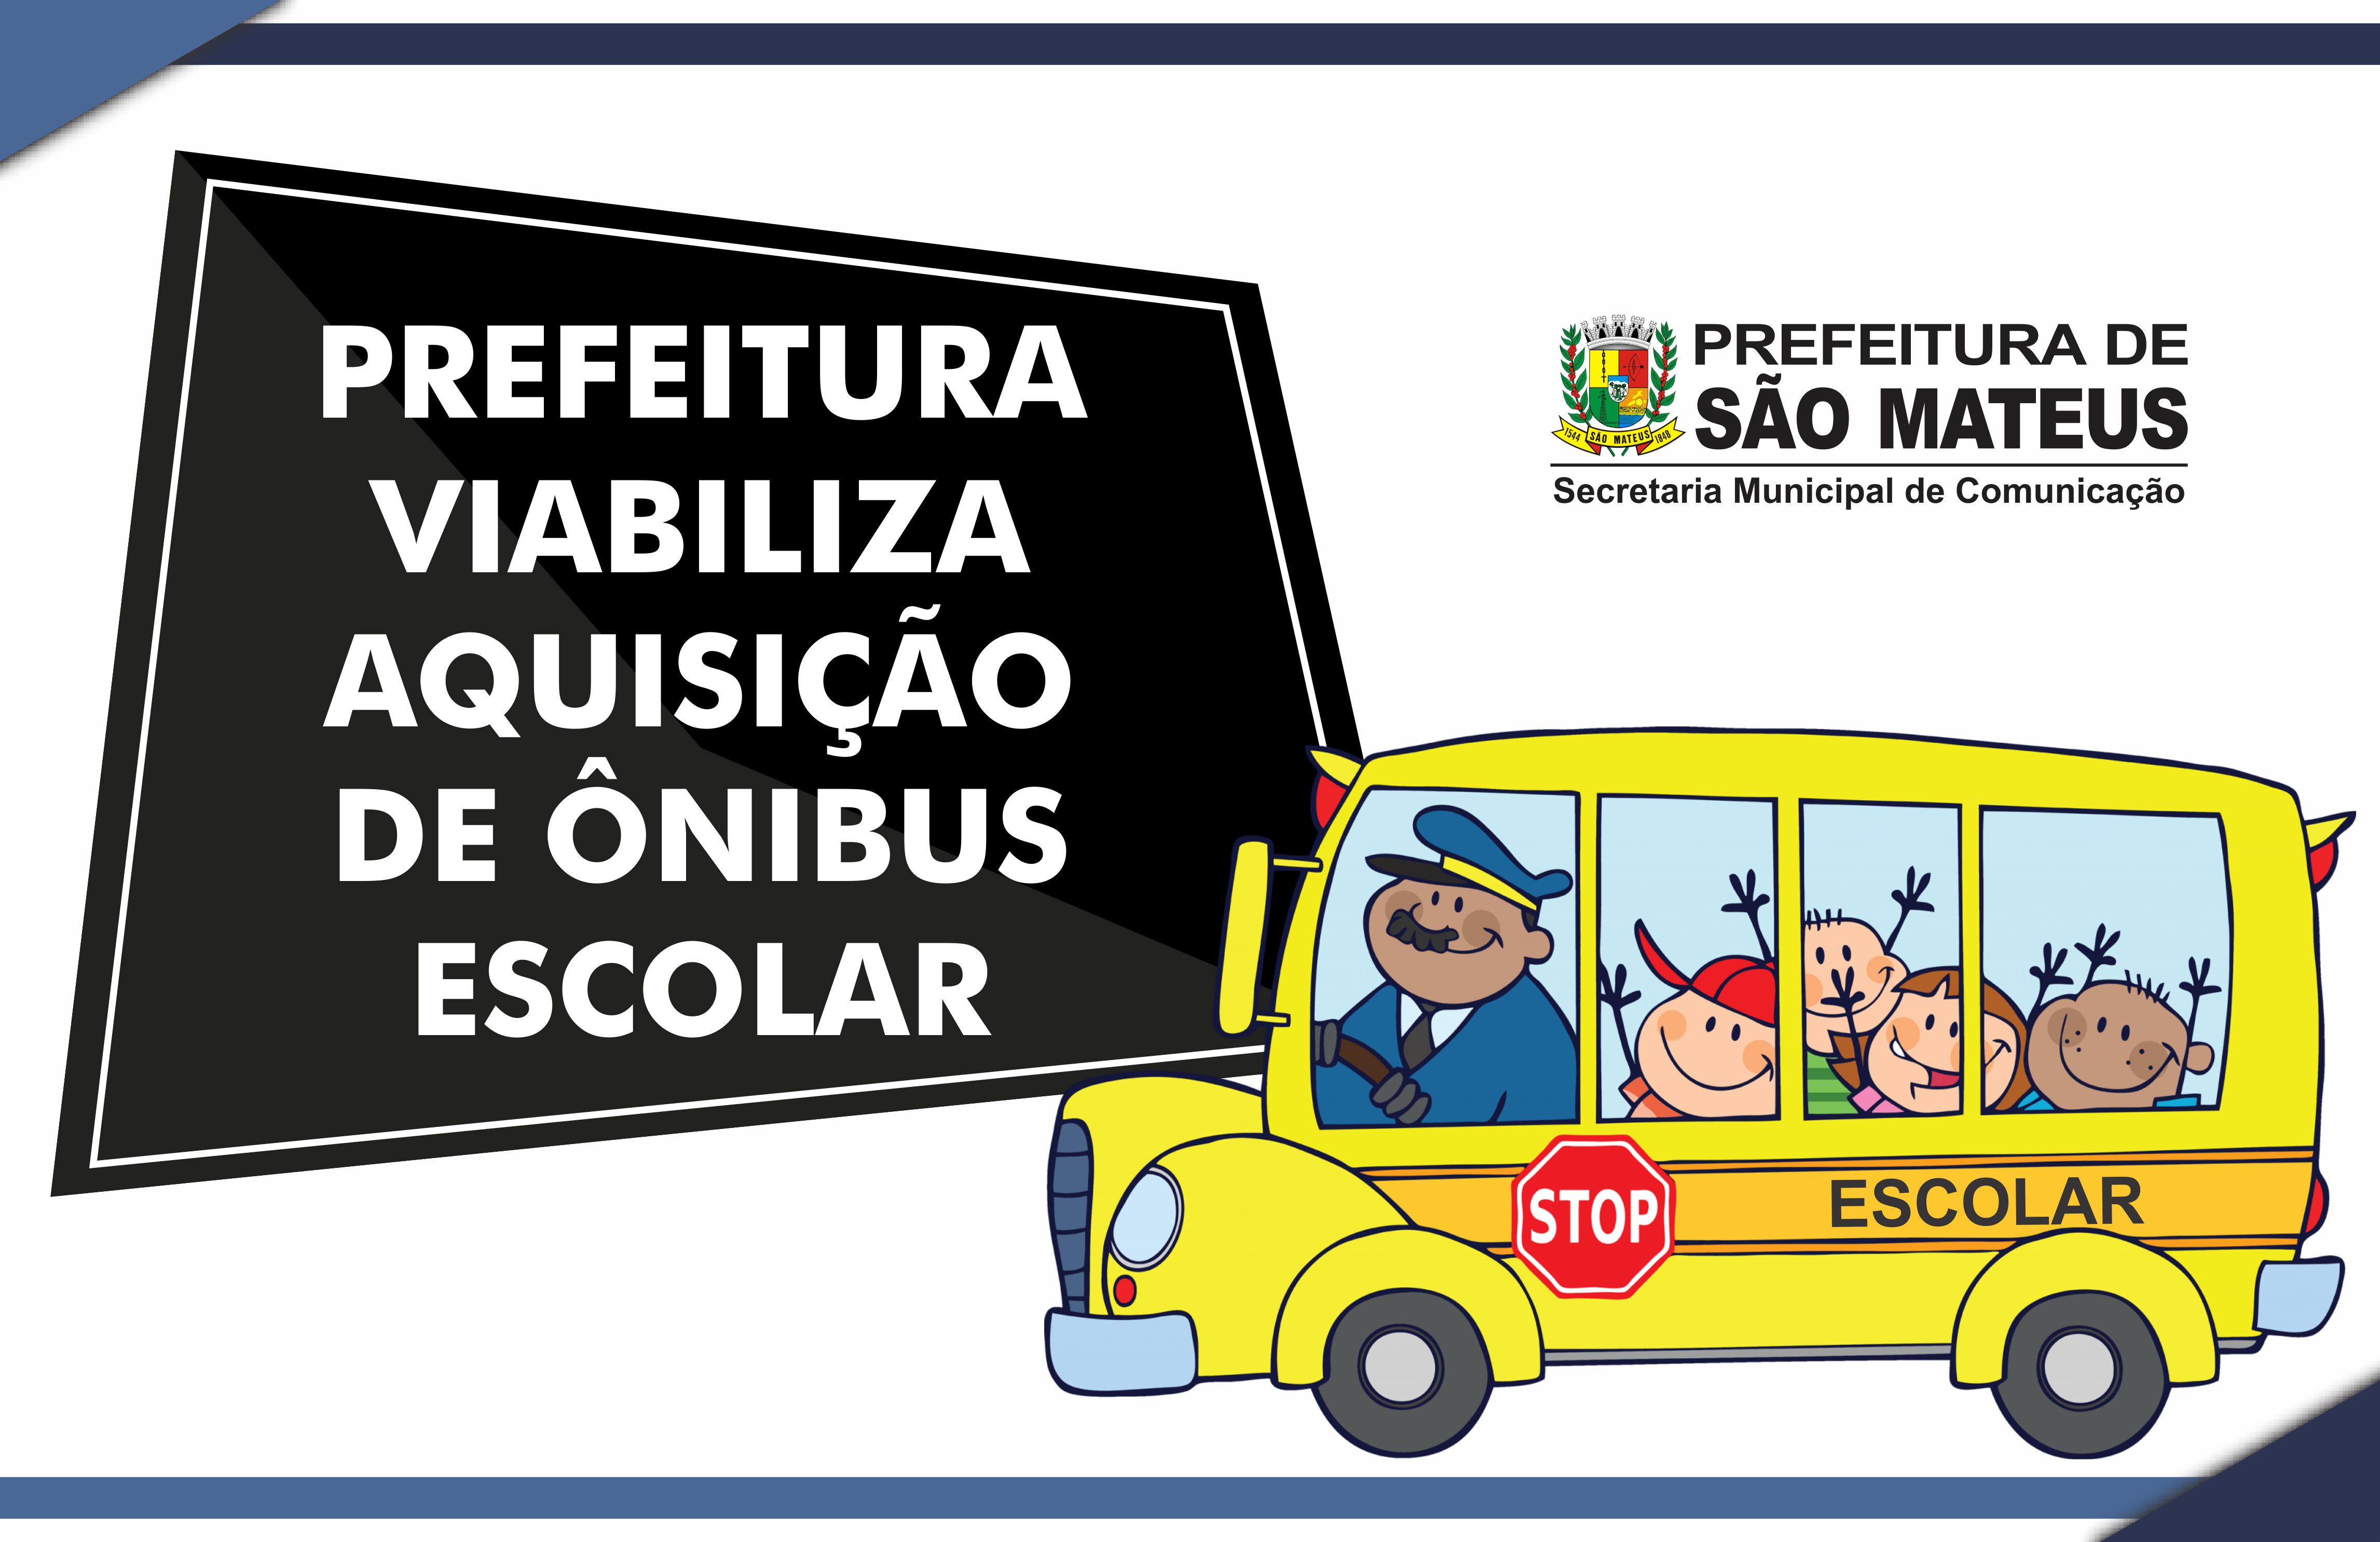 Prefeitura viabiliza aquisição de ônibus escolar